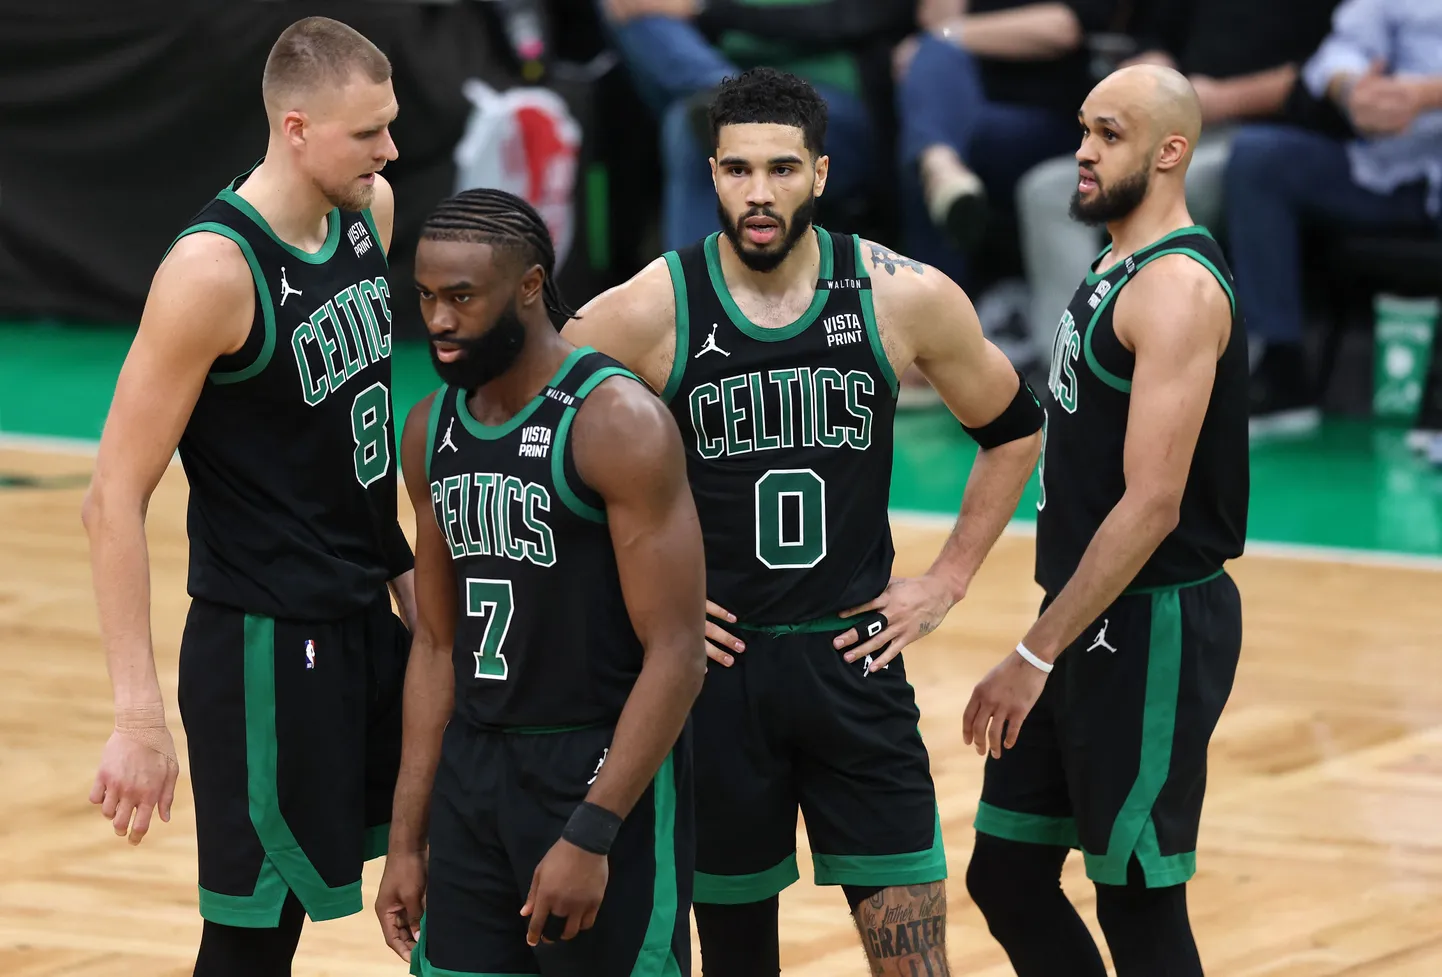 Bostonas "Celtics" basketbolisti – Kristaps Porziņģis, Džeilens Brauns, Džeisons Teitams, Deriks Vaits